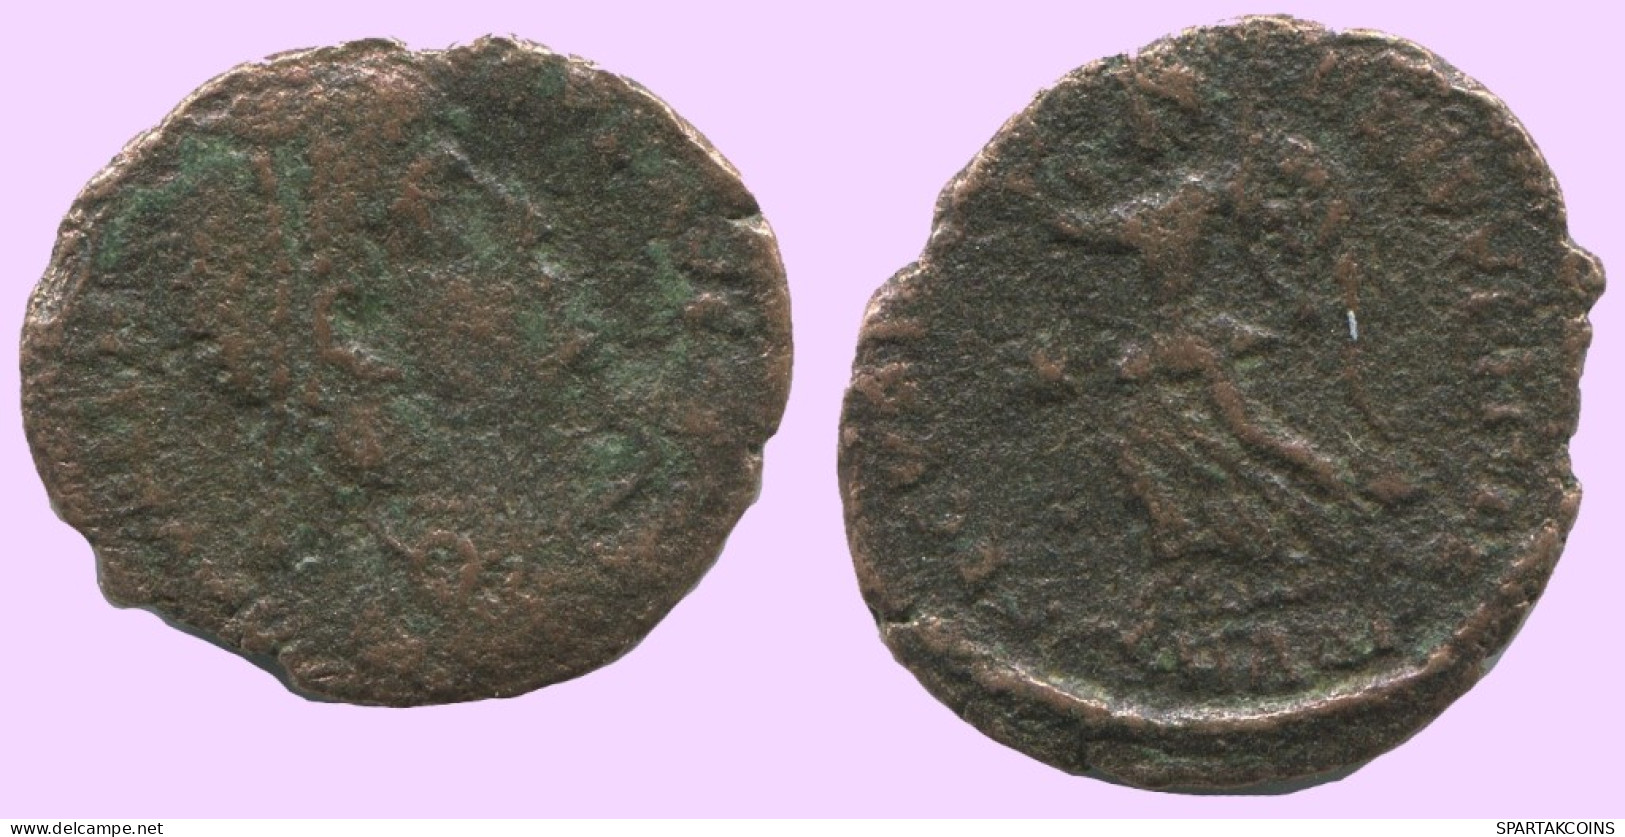 FOLLIS Antike Spätrömische Münze RÖMISCHE Münze 1.9g/18mm #ANT1985.7.D.A - The End Of Empire (363 AD To 476 AD)